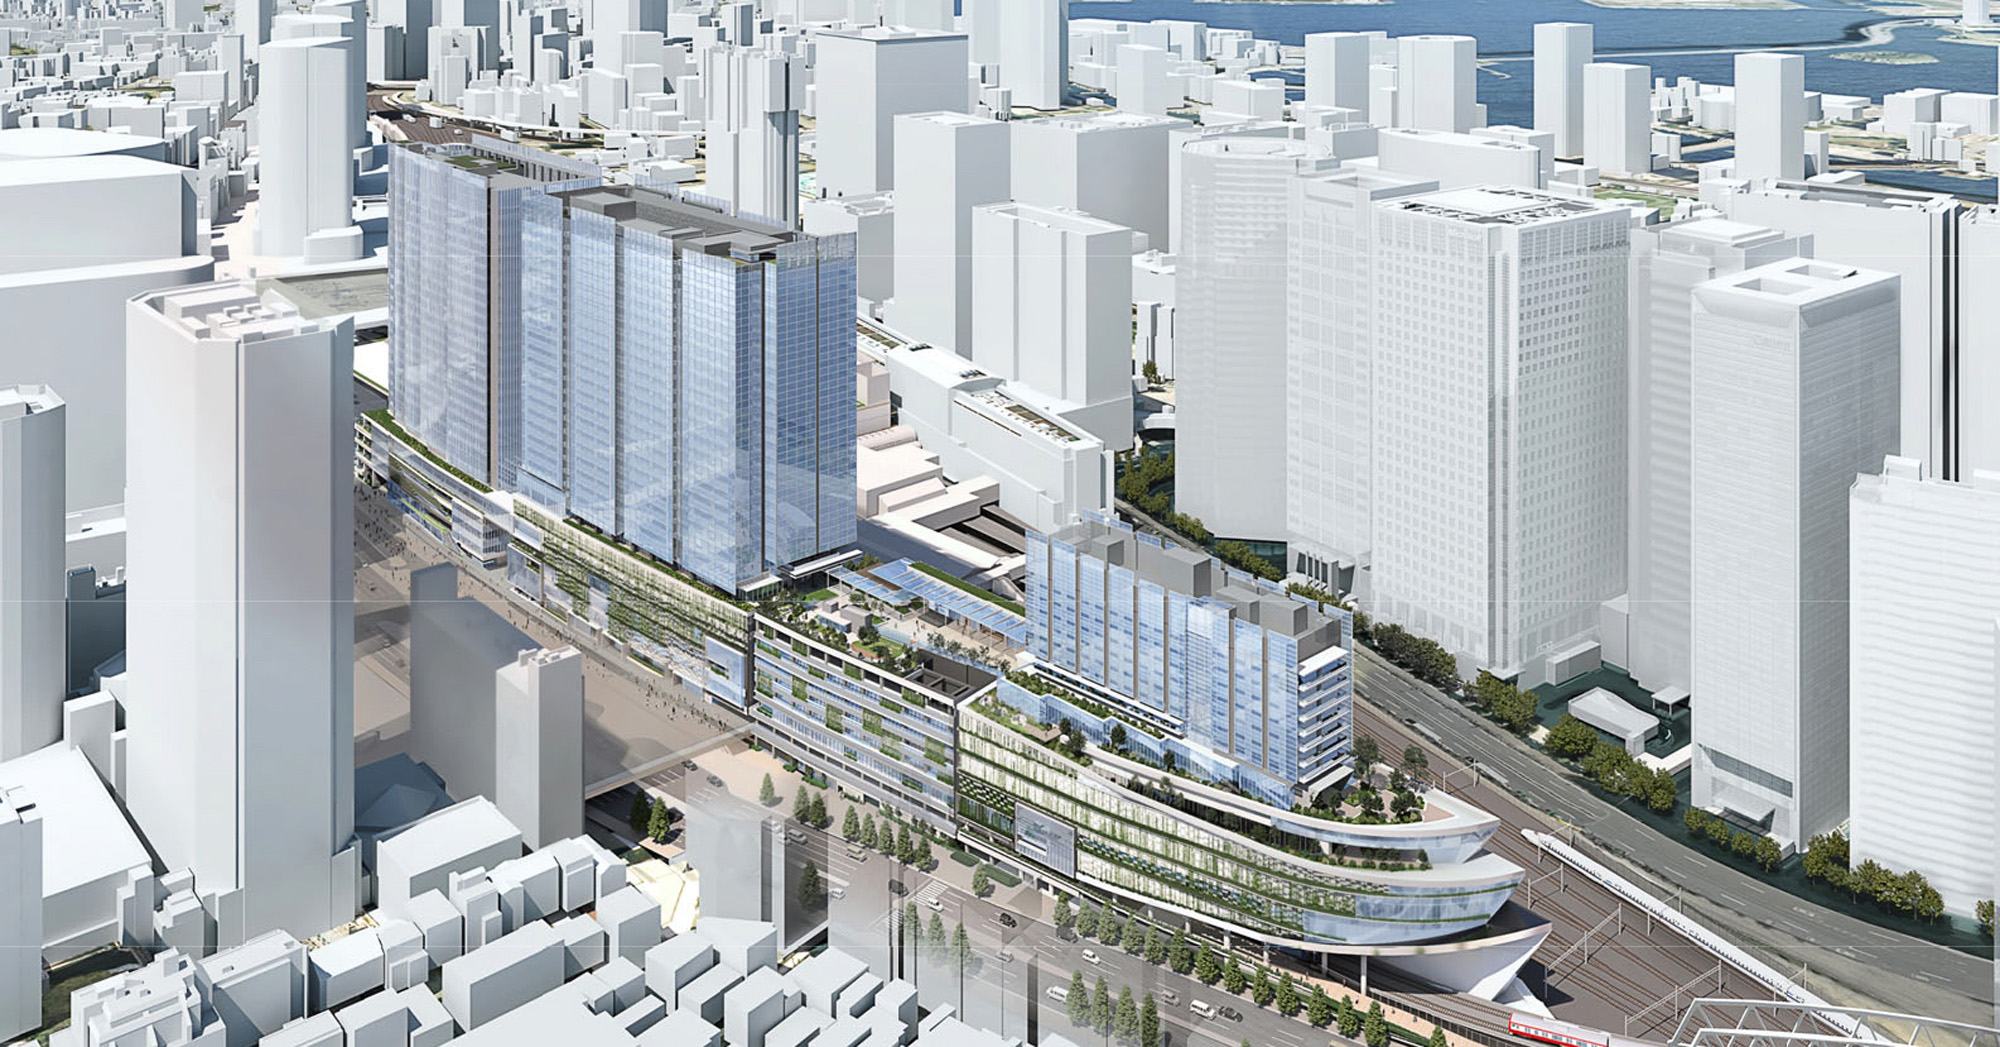 「品川駅」改良の全体像が見えてきた　交通結節点としてどうなる？